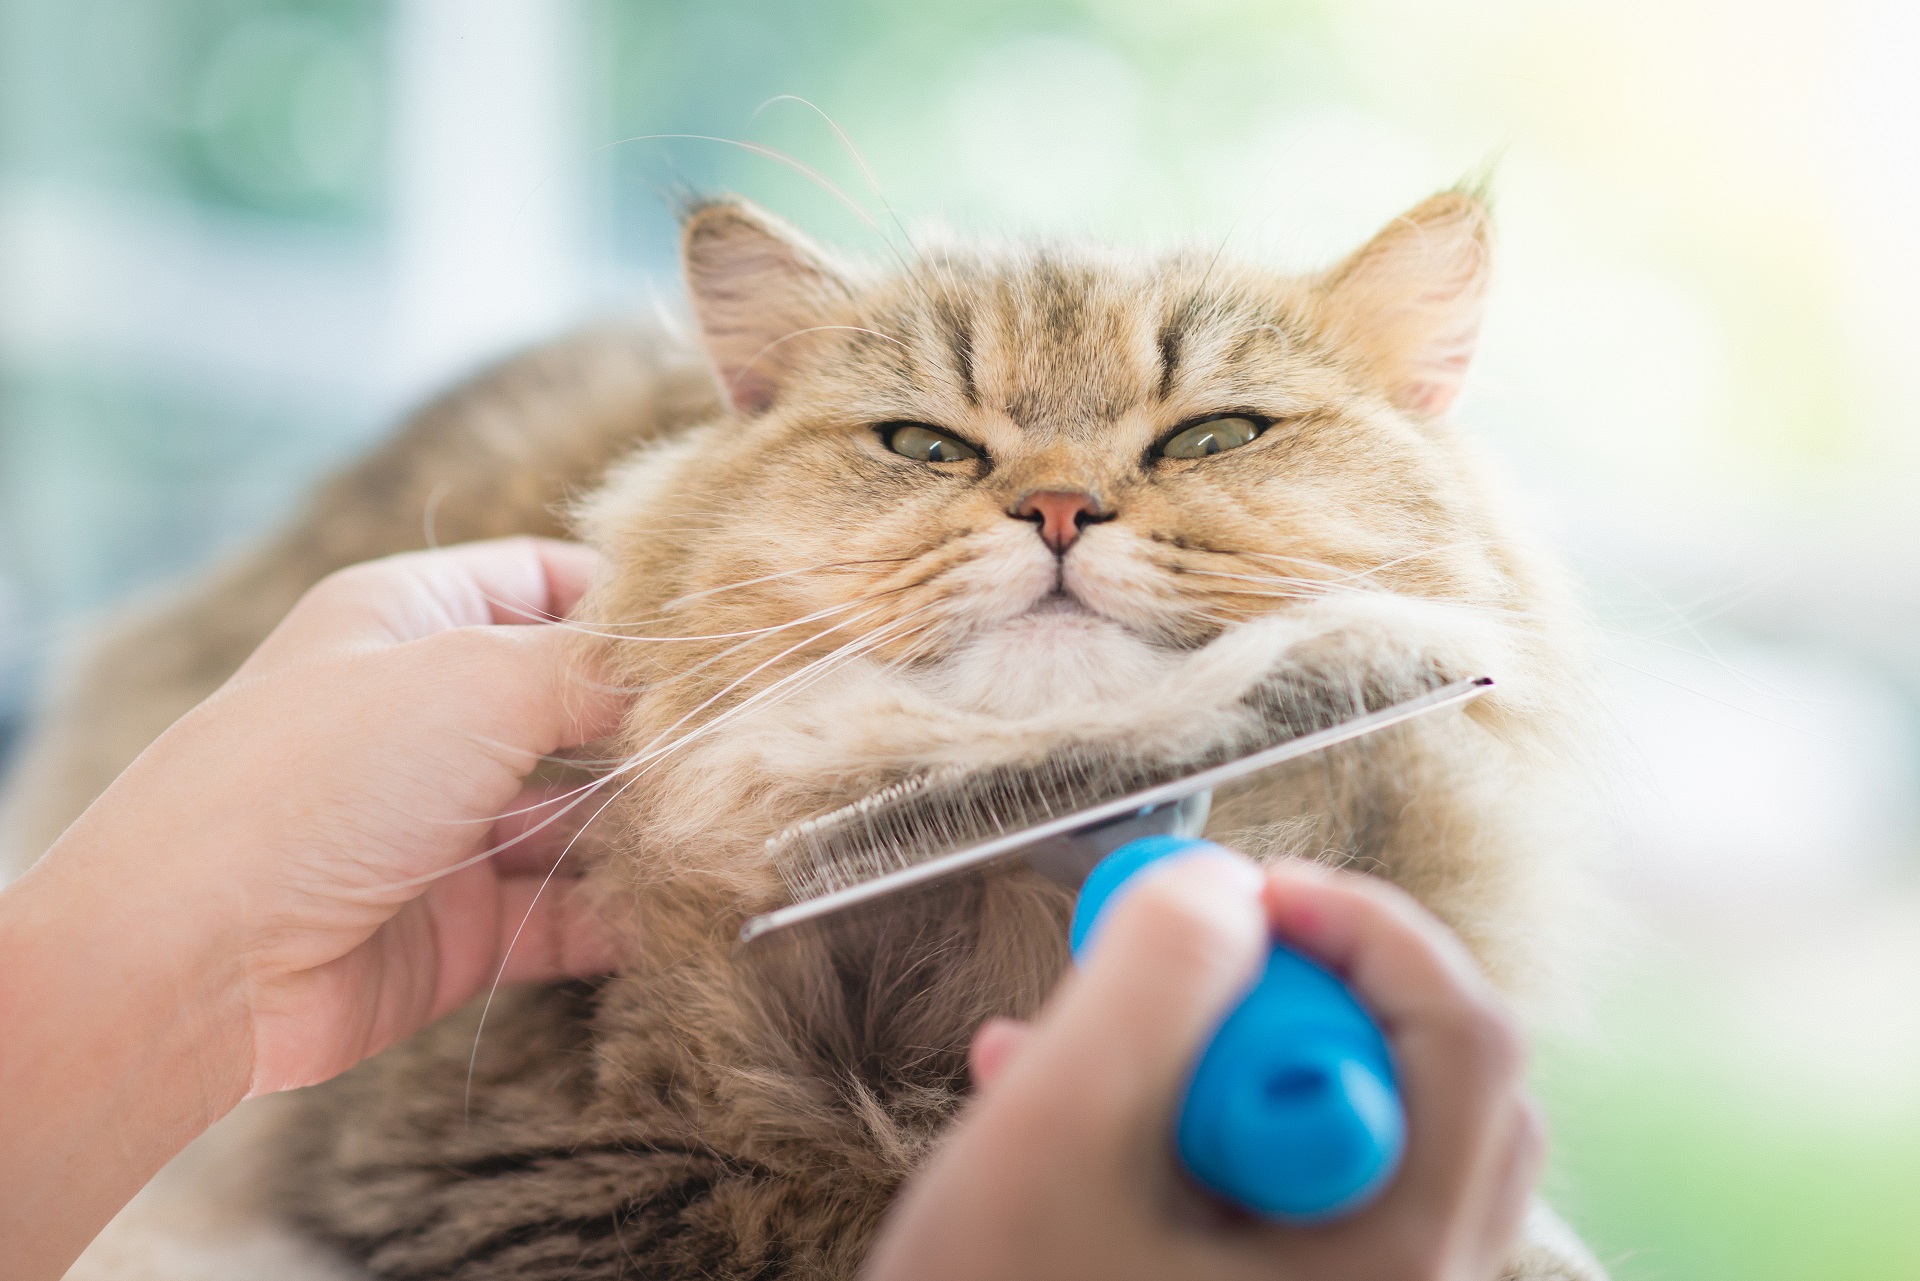 Großaufnahme einer Katze bei der Fellpflege durch eine Person. Die linke Hand streichelt die Katze am Kopf, die andere hält bürstet das Tier mit Metallbürste mit blauem Griff am Hals.